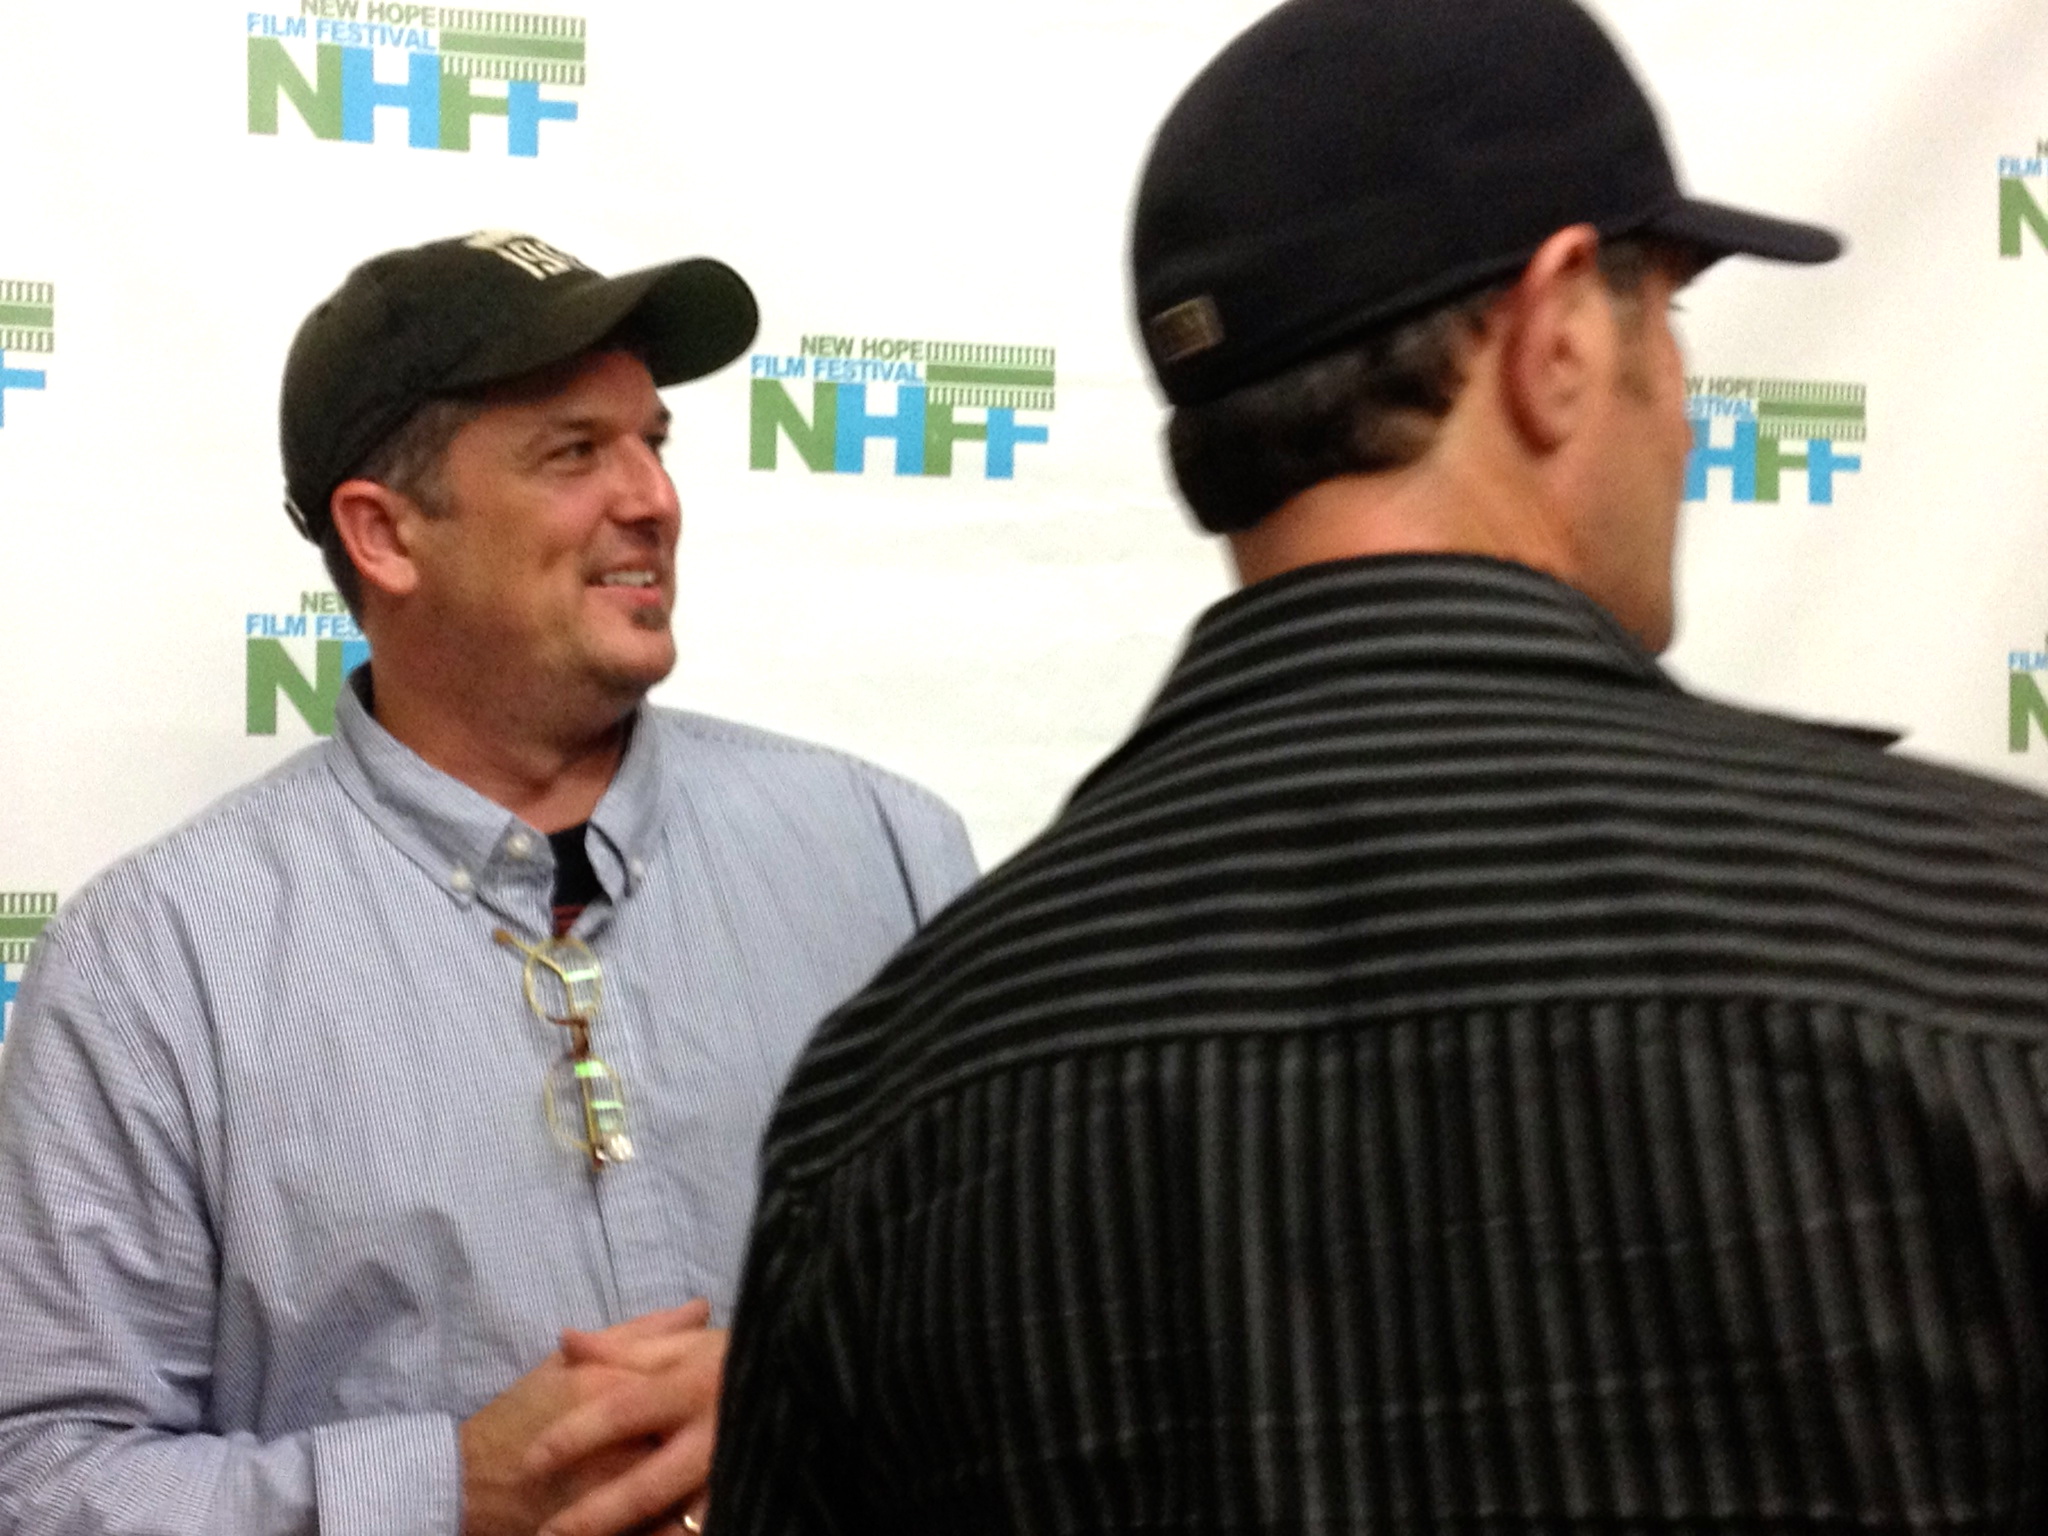 Gavin at New Hope Film Festival 2013